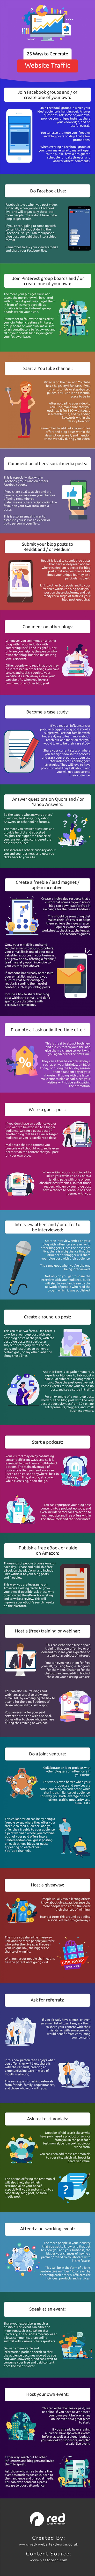 Infographic met 25 tips voor meer websitebezoekers